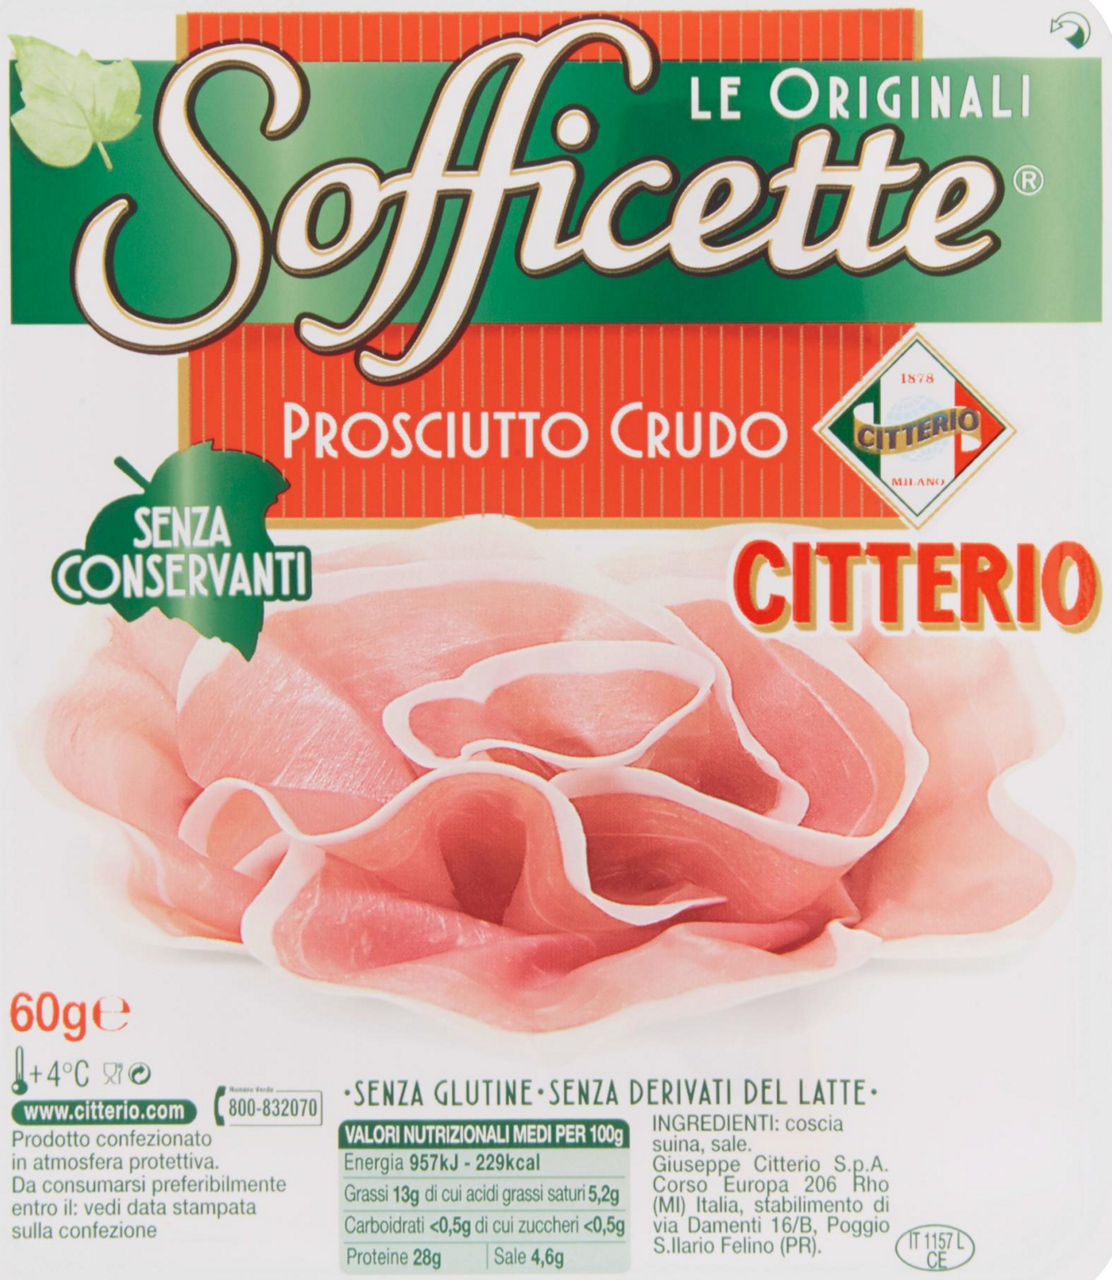 PROSCIUTTO CRUDO SOFFICETTE CITTERIO VASCHETTA GR 60 - 0